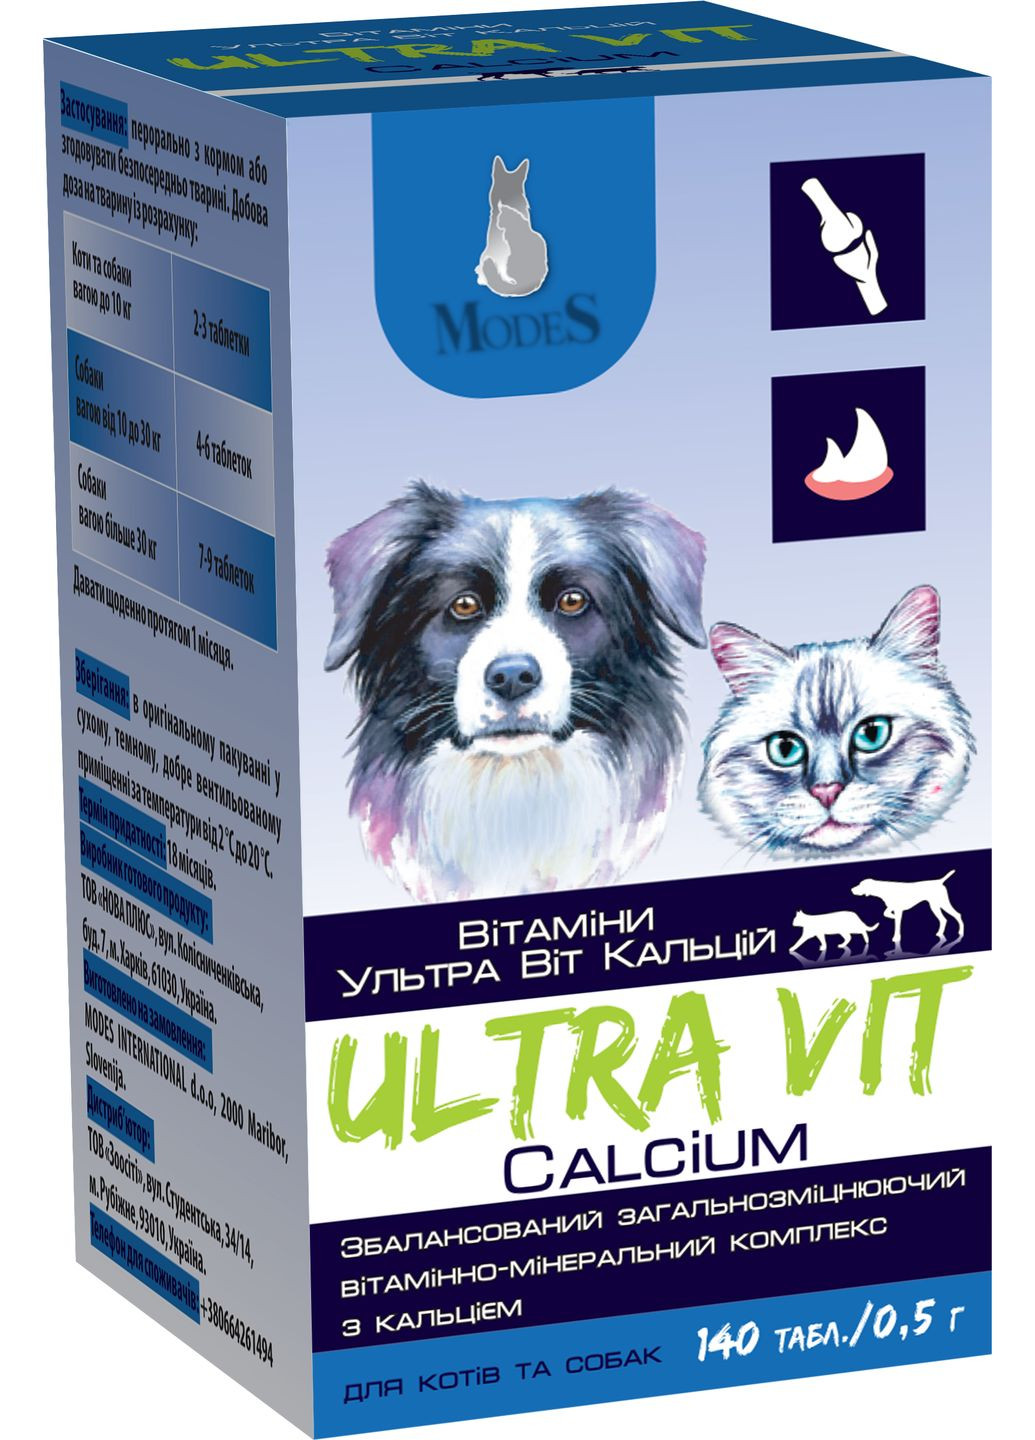 Витаминноминеральный комплекс Ultra Vit Calcium для кошек и собак с кальцием 140 таблеток по 0.5 г (4820254820201) ModeS (279567045)